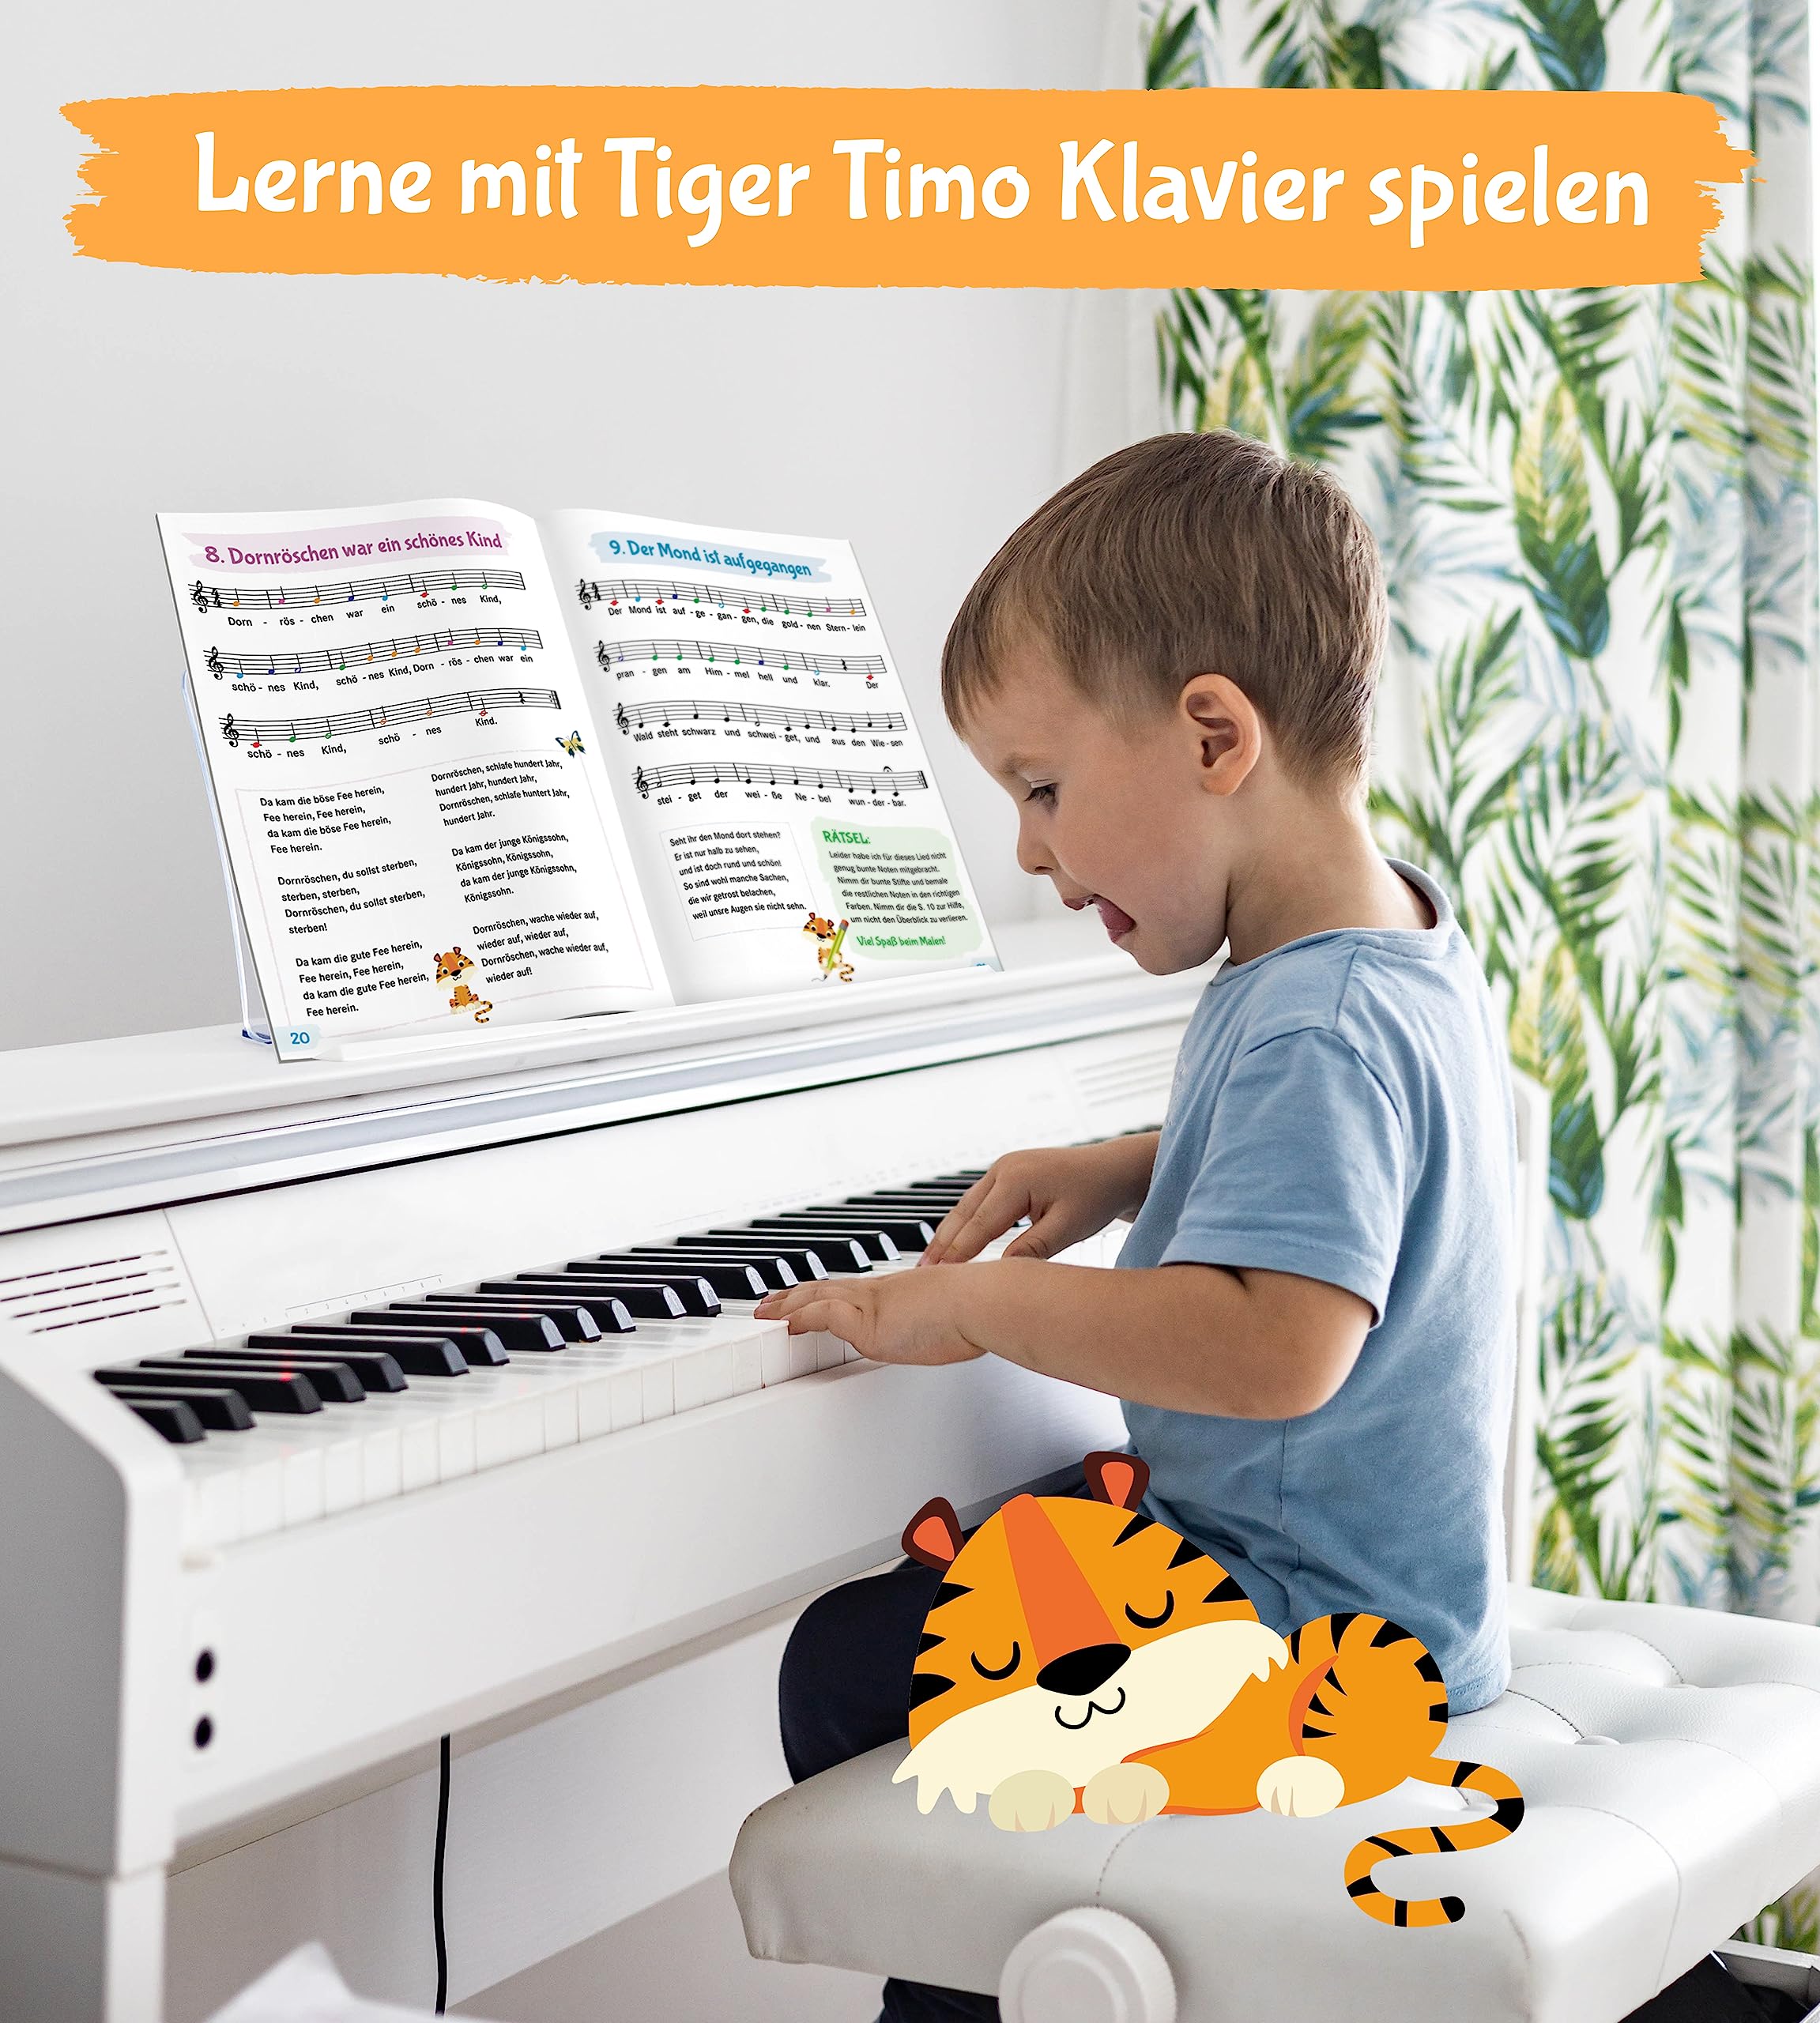 Klavier lernen mit Tiger Timo: 50 Klavierstücke für Kinder mit bunten Klaviernoten – Musikalische Früherziehung für zu Hause mit Rätsel-Spaß, Tasten-Schablonen zum Ausschneiden und Audio-Downloads